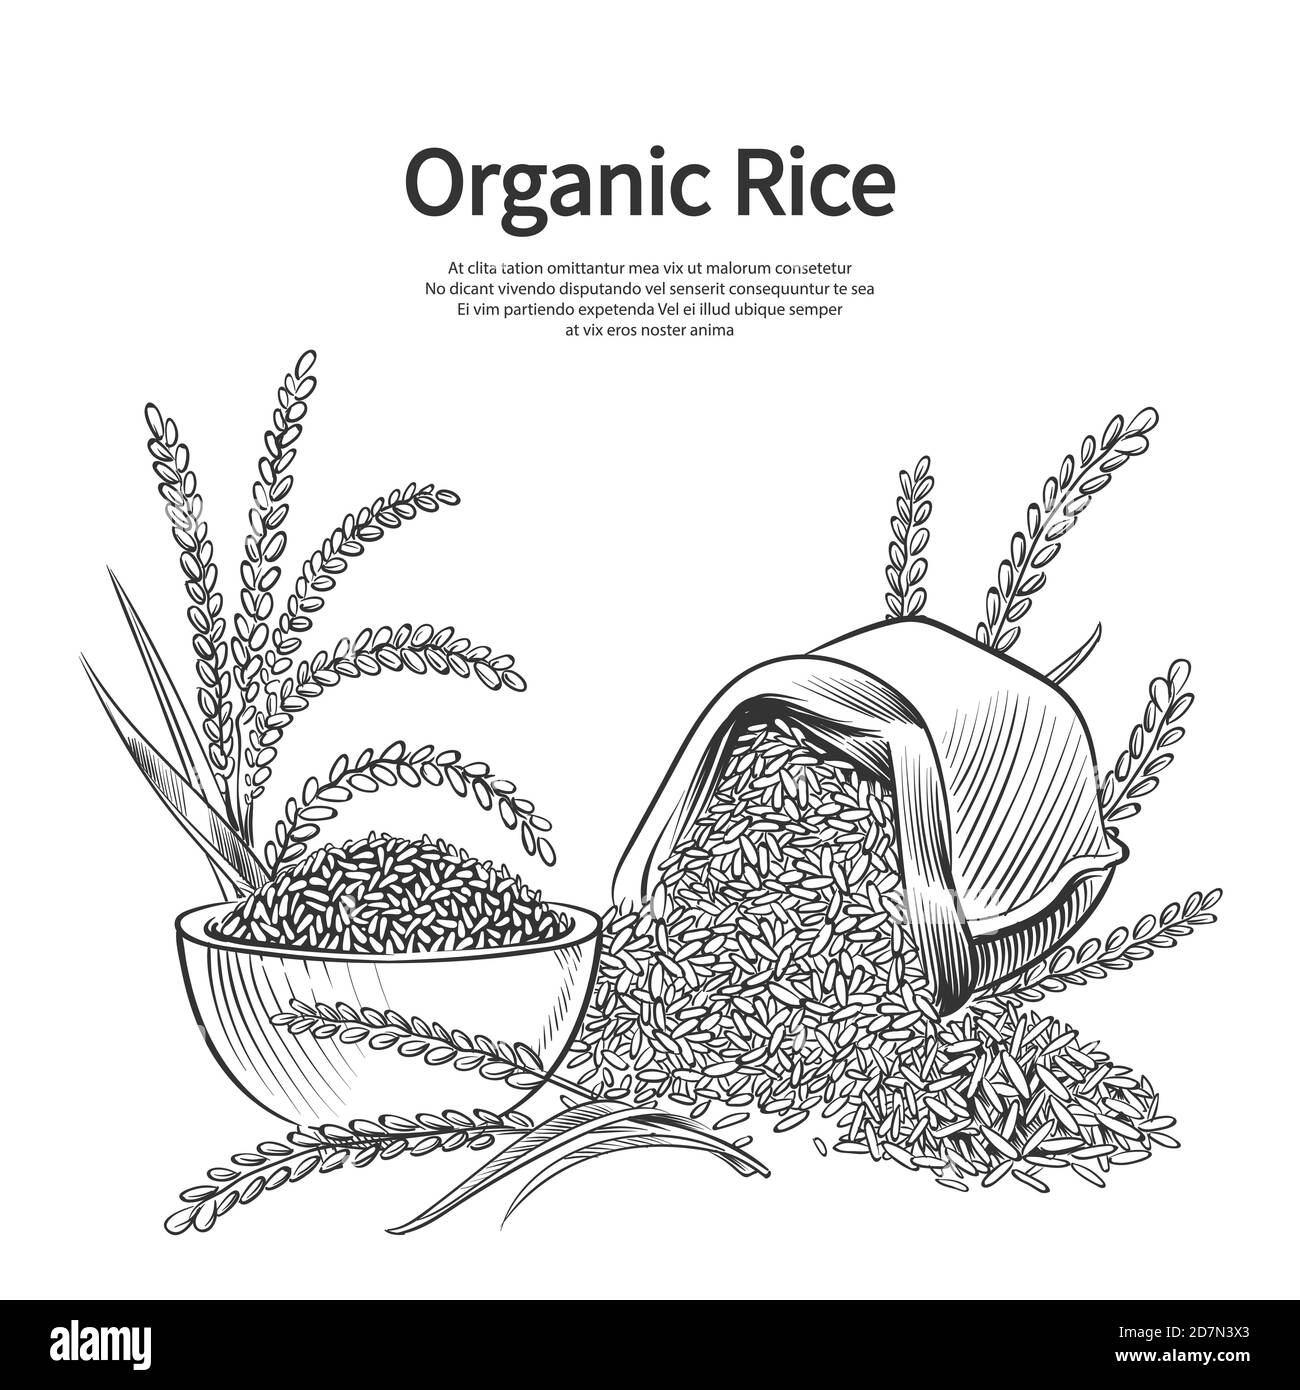 Handgezeichneter Reis Hintergrund. Reissack, Schüssel und Ohren Vektorgrafik. Reisernte, Sack Erntegut Schüssel, Landwirtschaft Getreide Stock Vektor